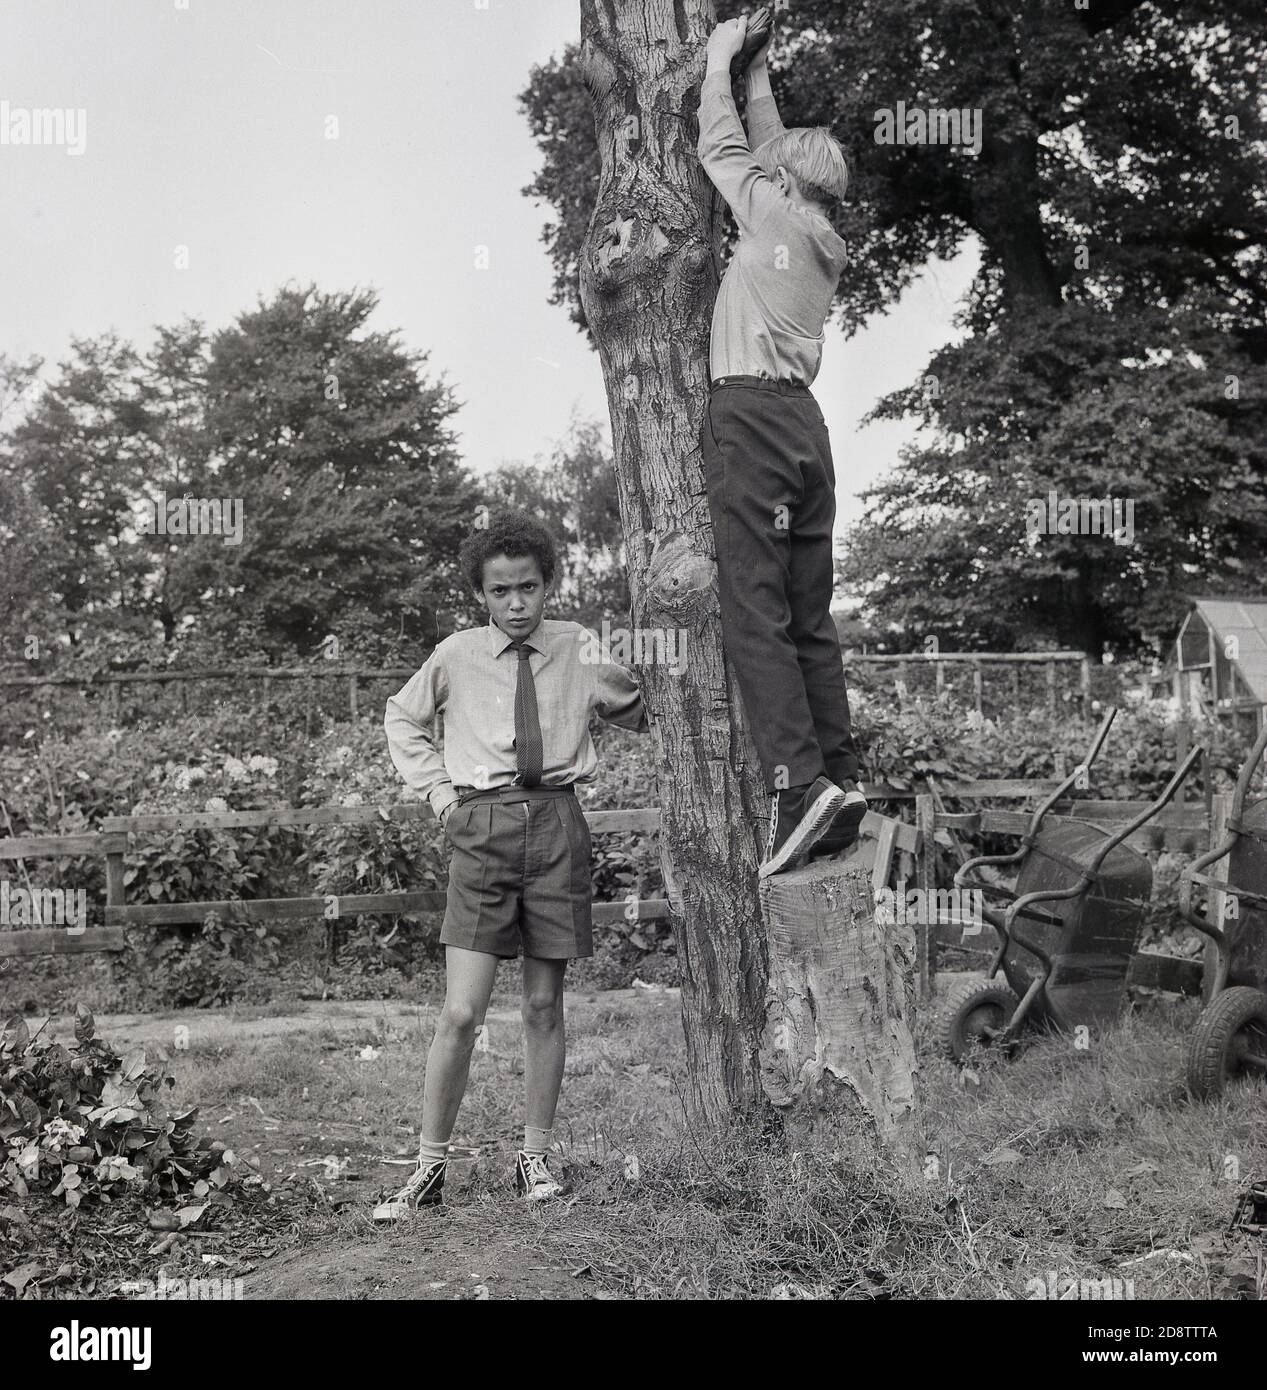 1960, histórico, dos escolares en un internado de niños del estado de Londres en un jardín exterior y área de actividad, con uno de los niños tratando de subir un árbol cortado. Foto de stock